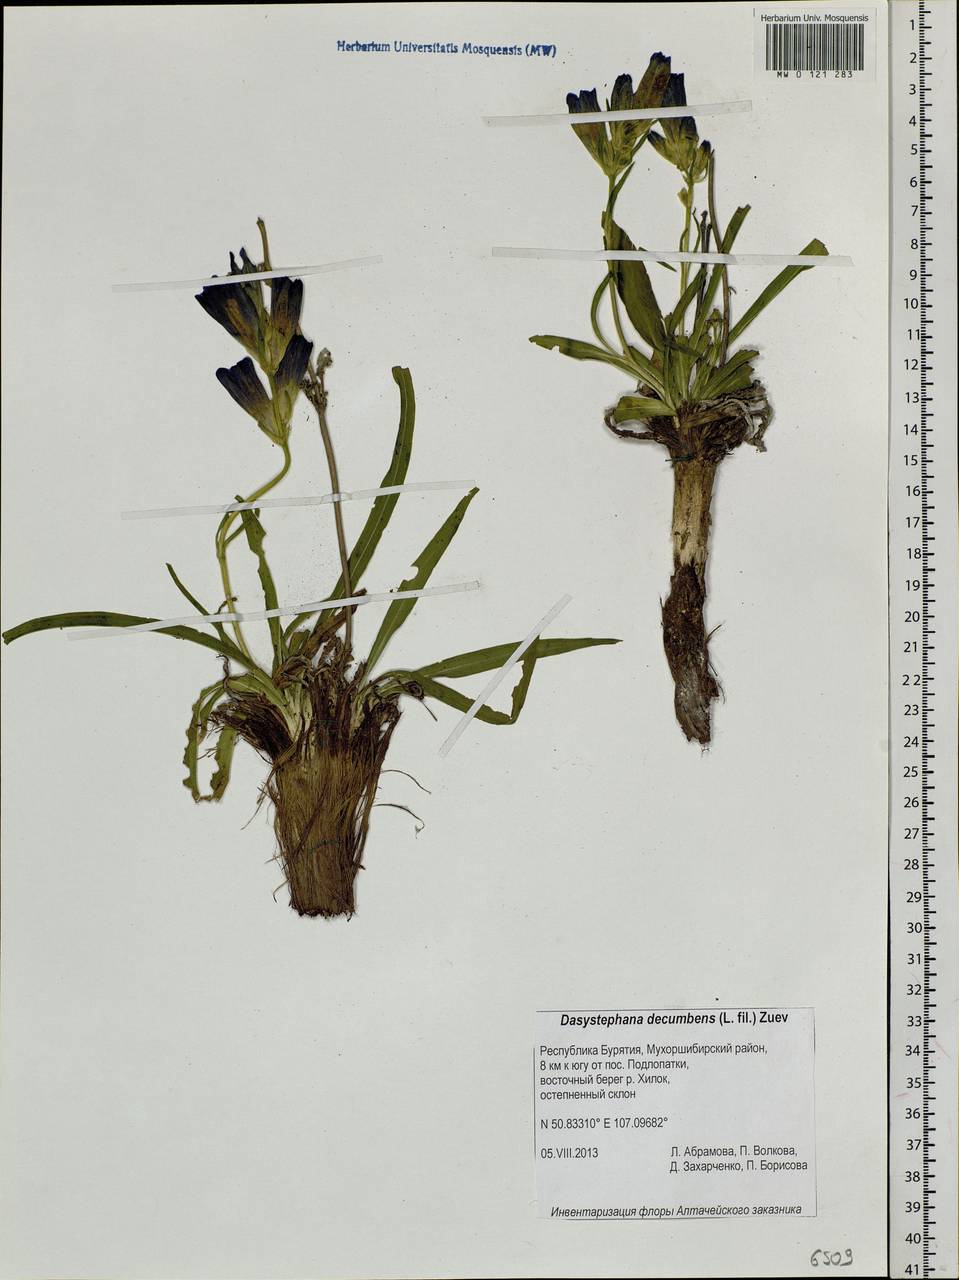 Gentiana decumbens L. fil., Siberia, Baikal & Transbaikal region (S4) (Russia)